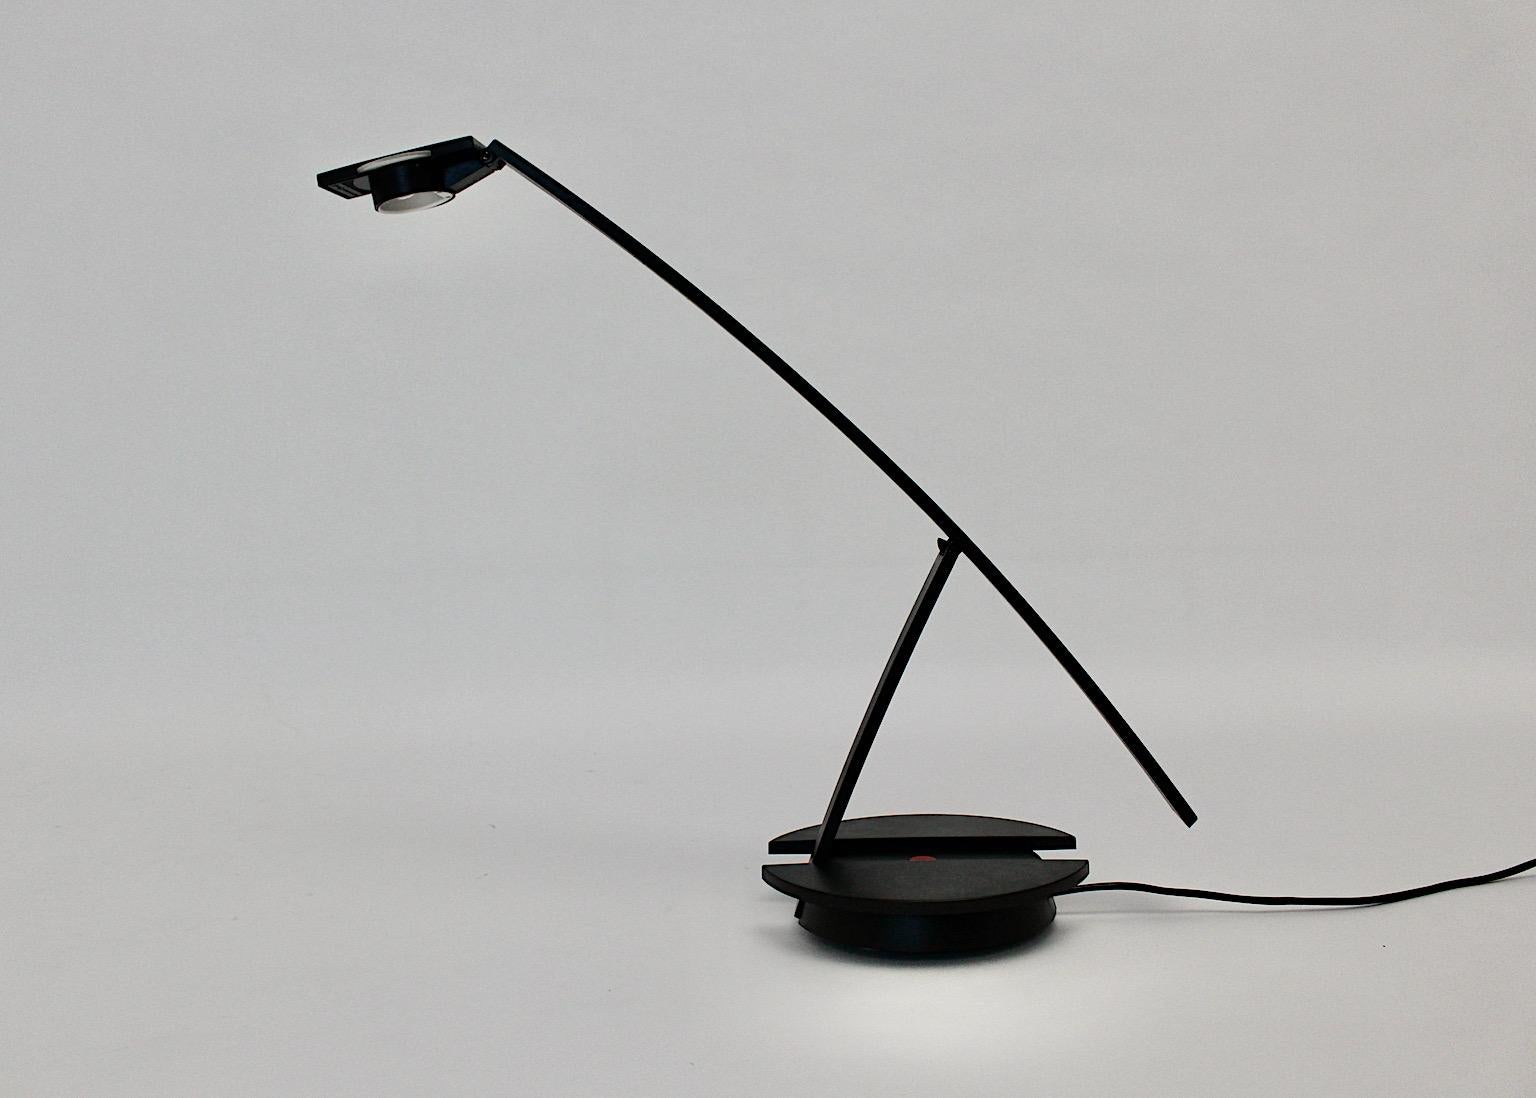 Lampe de table ou lampe de bureau moderne italienne en métal et plastique concorde like en couleur noir par Raul Barbieri pour Tronconi Italie, 1980.
Le nom de l'entreprise est indiqué sous la lampe :
Tronconi Master designed by Raul Barbieri Made